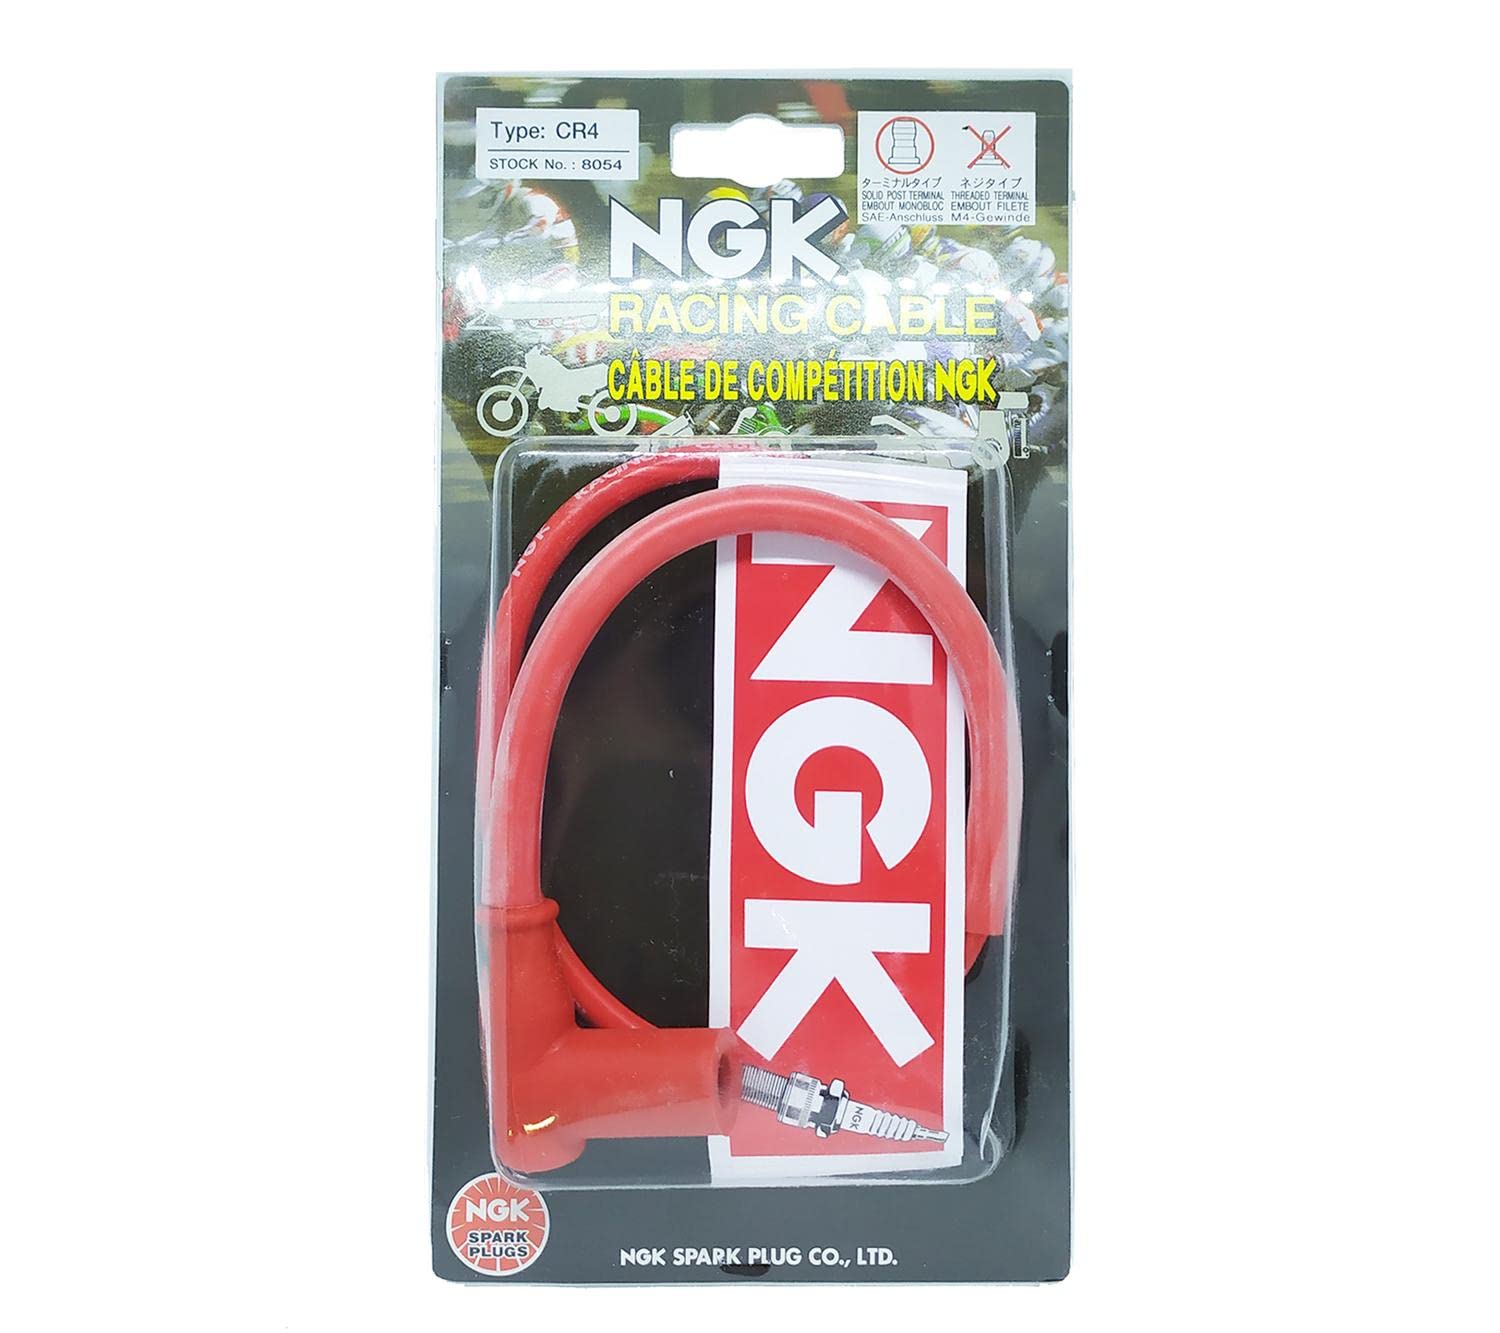 NGK ( エヌジーケー ) 2輪レーシングケーブル (1本/ブリスターパック) 【8054】 CR4